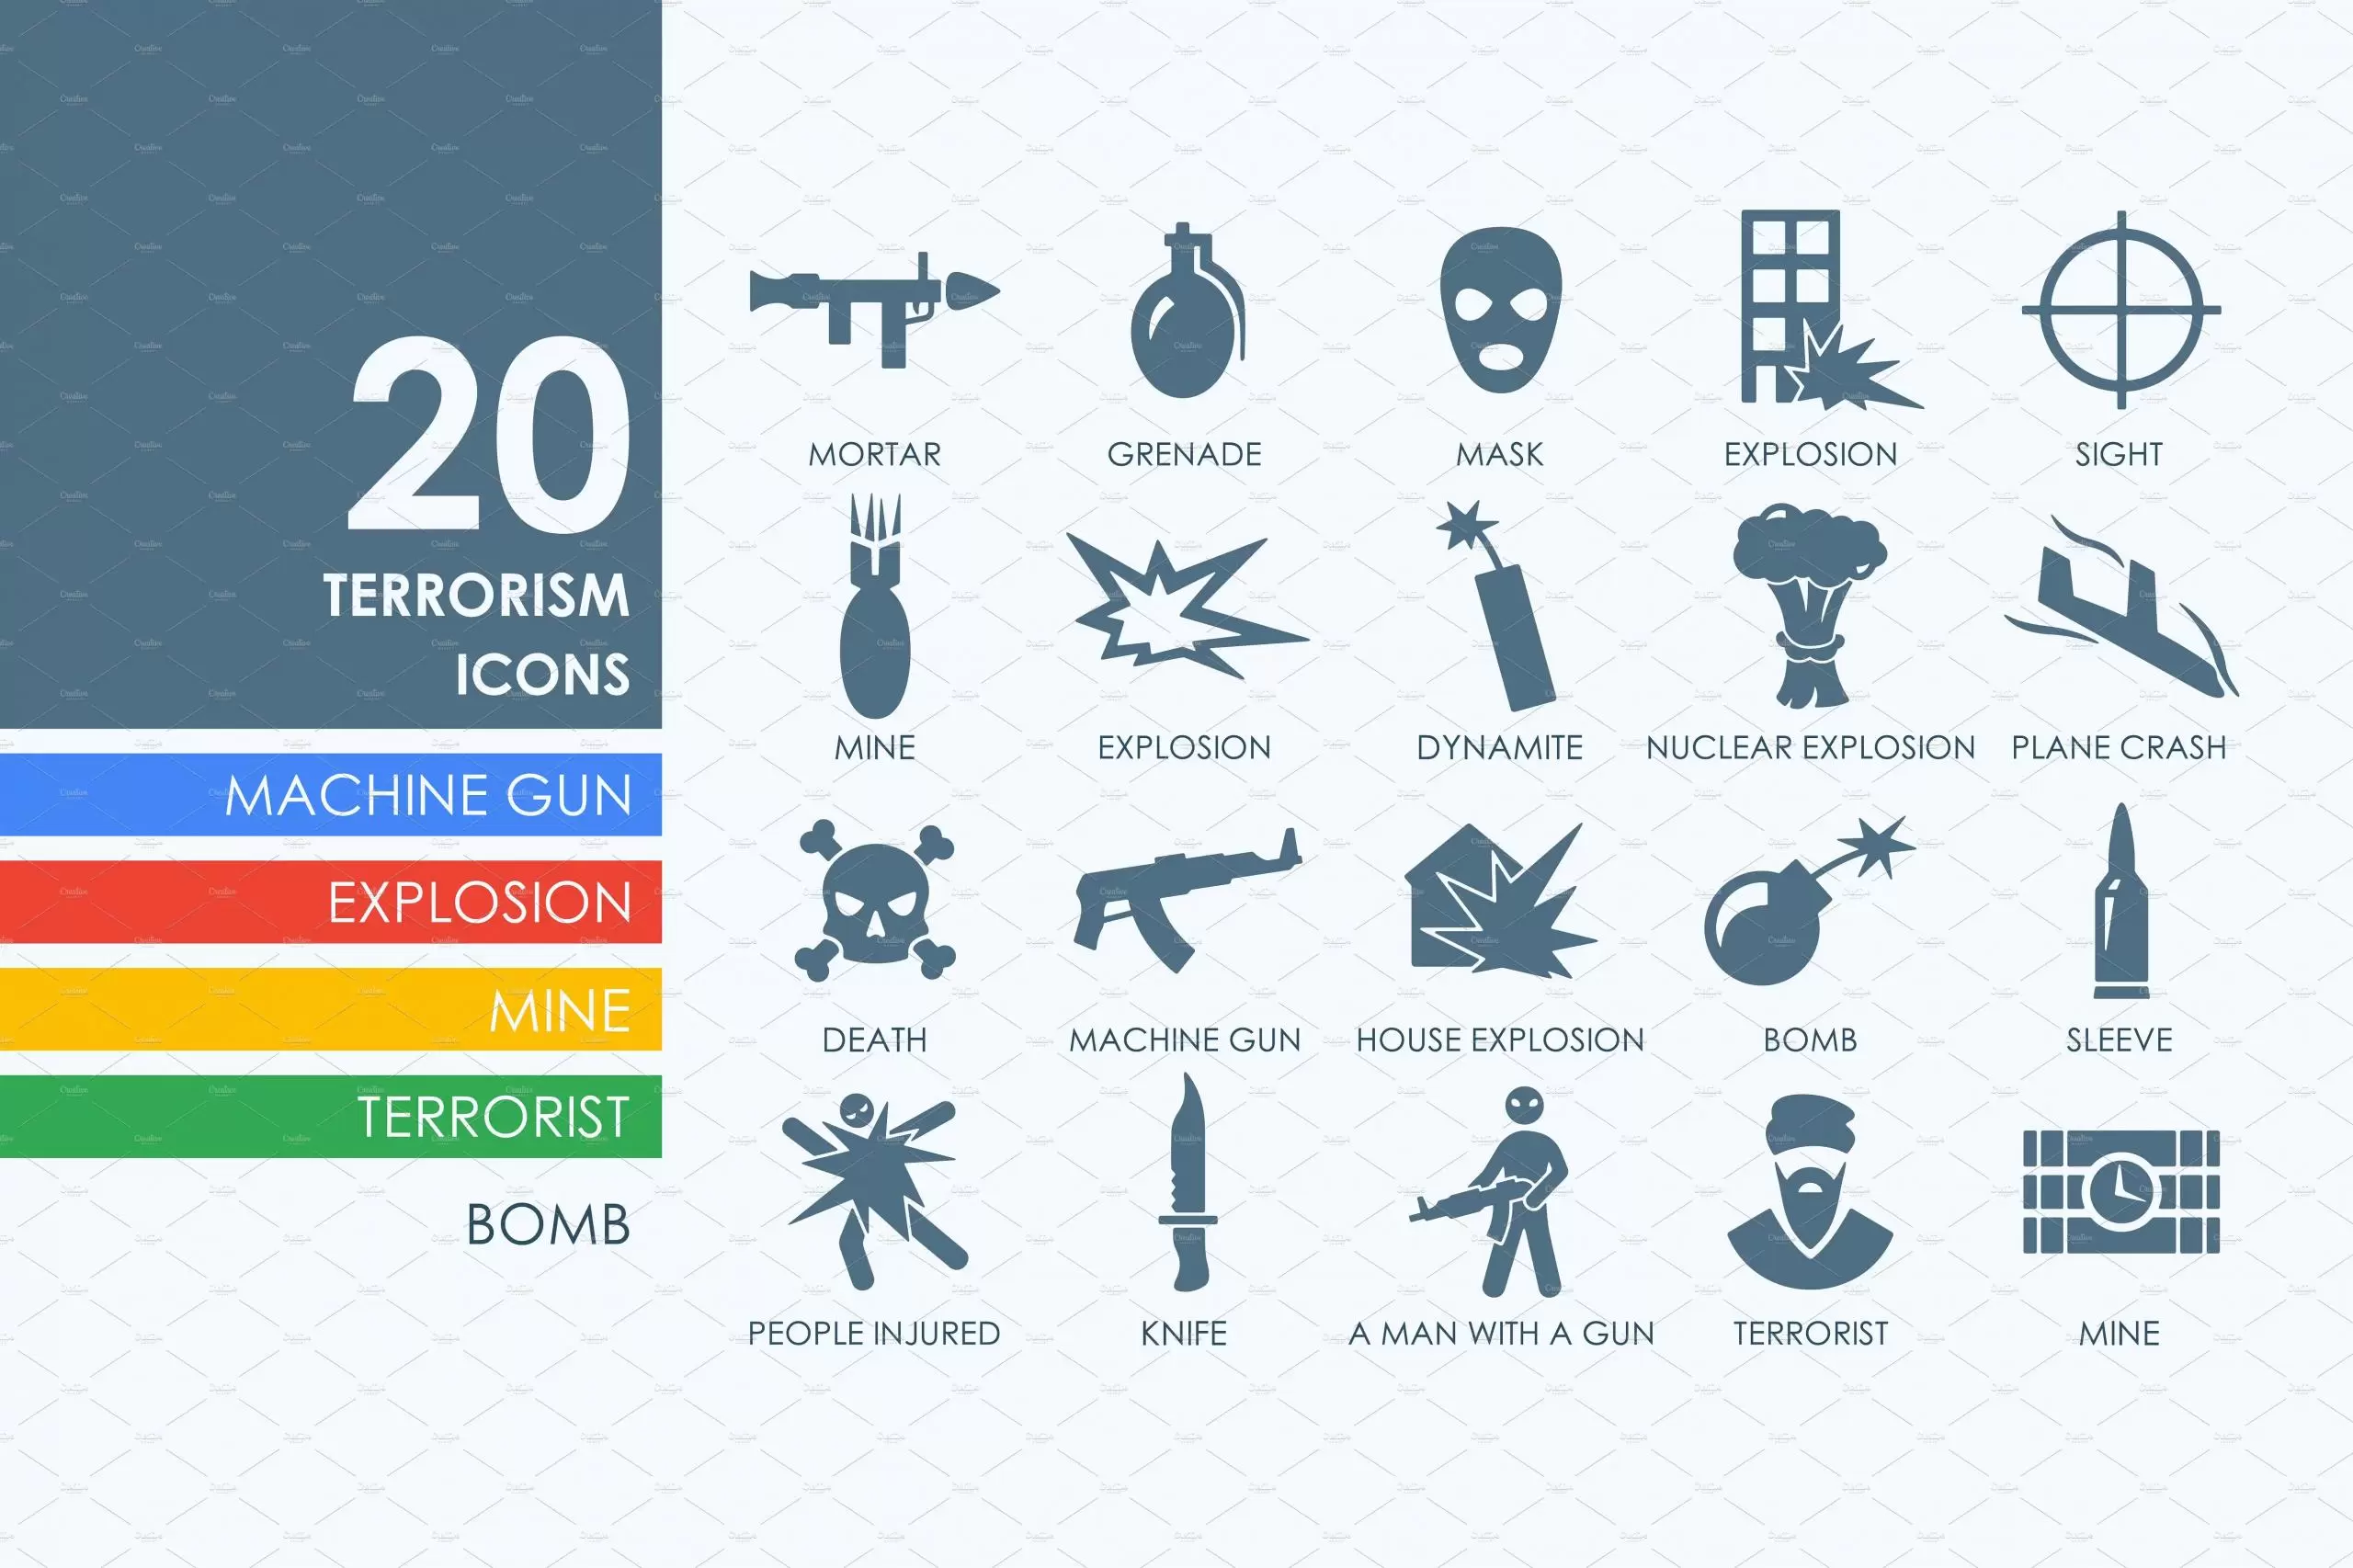 反恐图标素材 20 terrorism icons插图